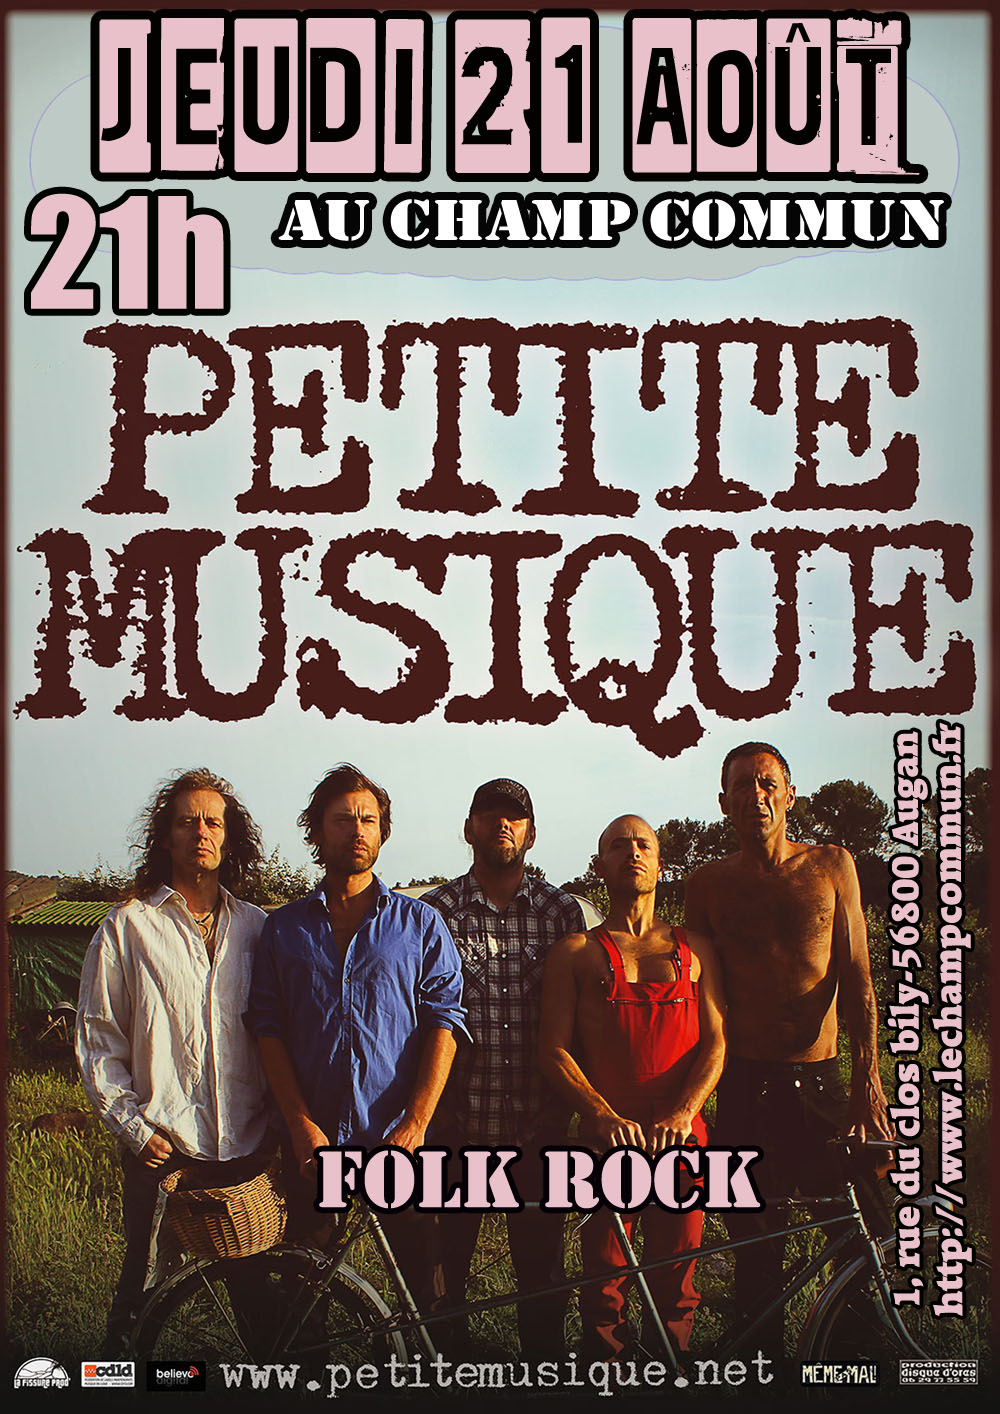 Jeudi 21 Août à 21h au Champ Commun - Folk rock avec le groupe Petite Musique